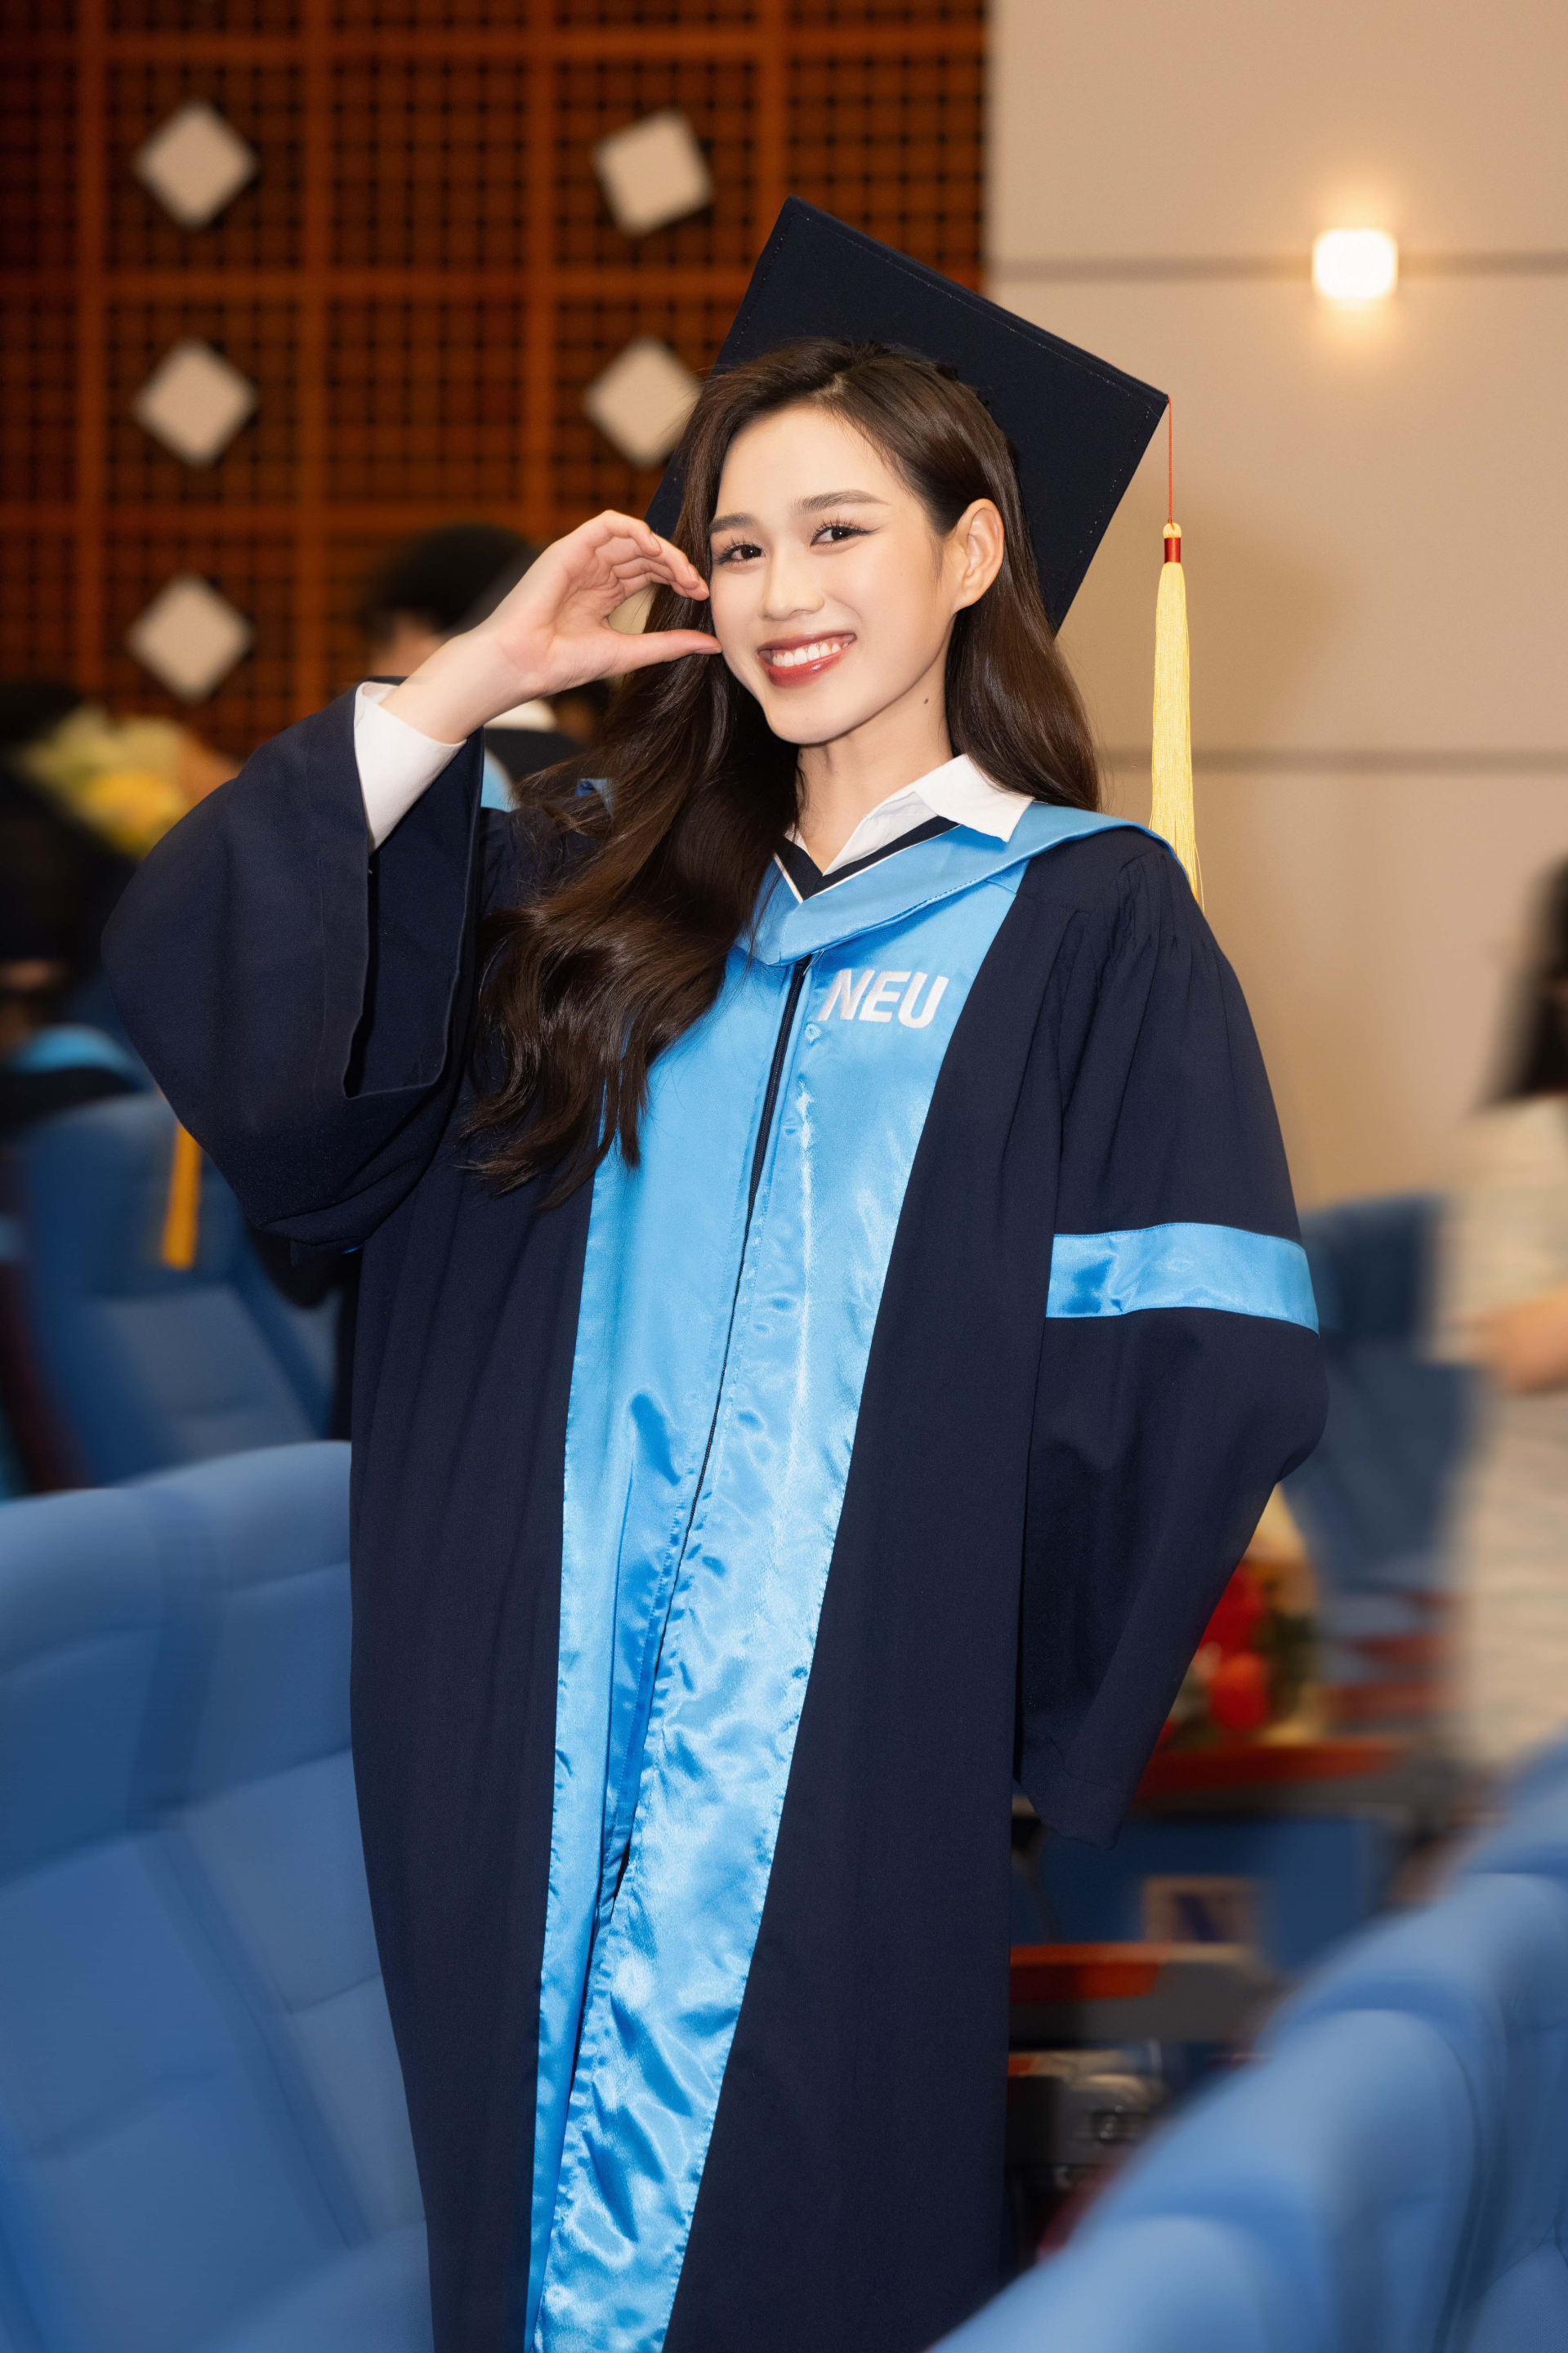 Hoa hậu Đỗ Hà cuốn hút trong ngày tốt nghiệp NEU, hào hứng chuẩn bị làm CEO ngành làm đẹp - ảnh 4